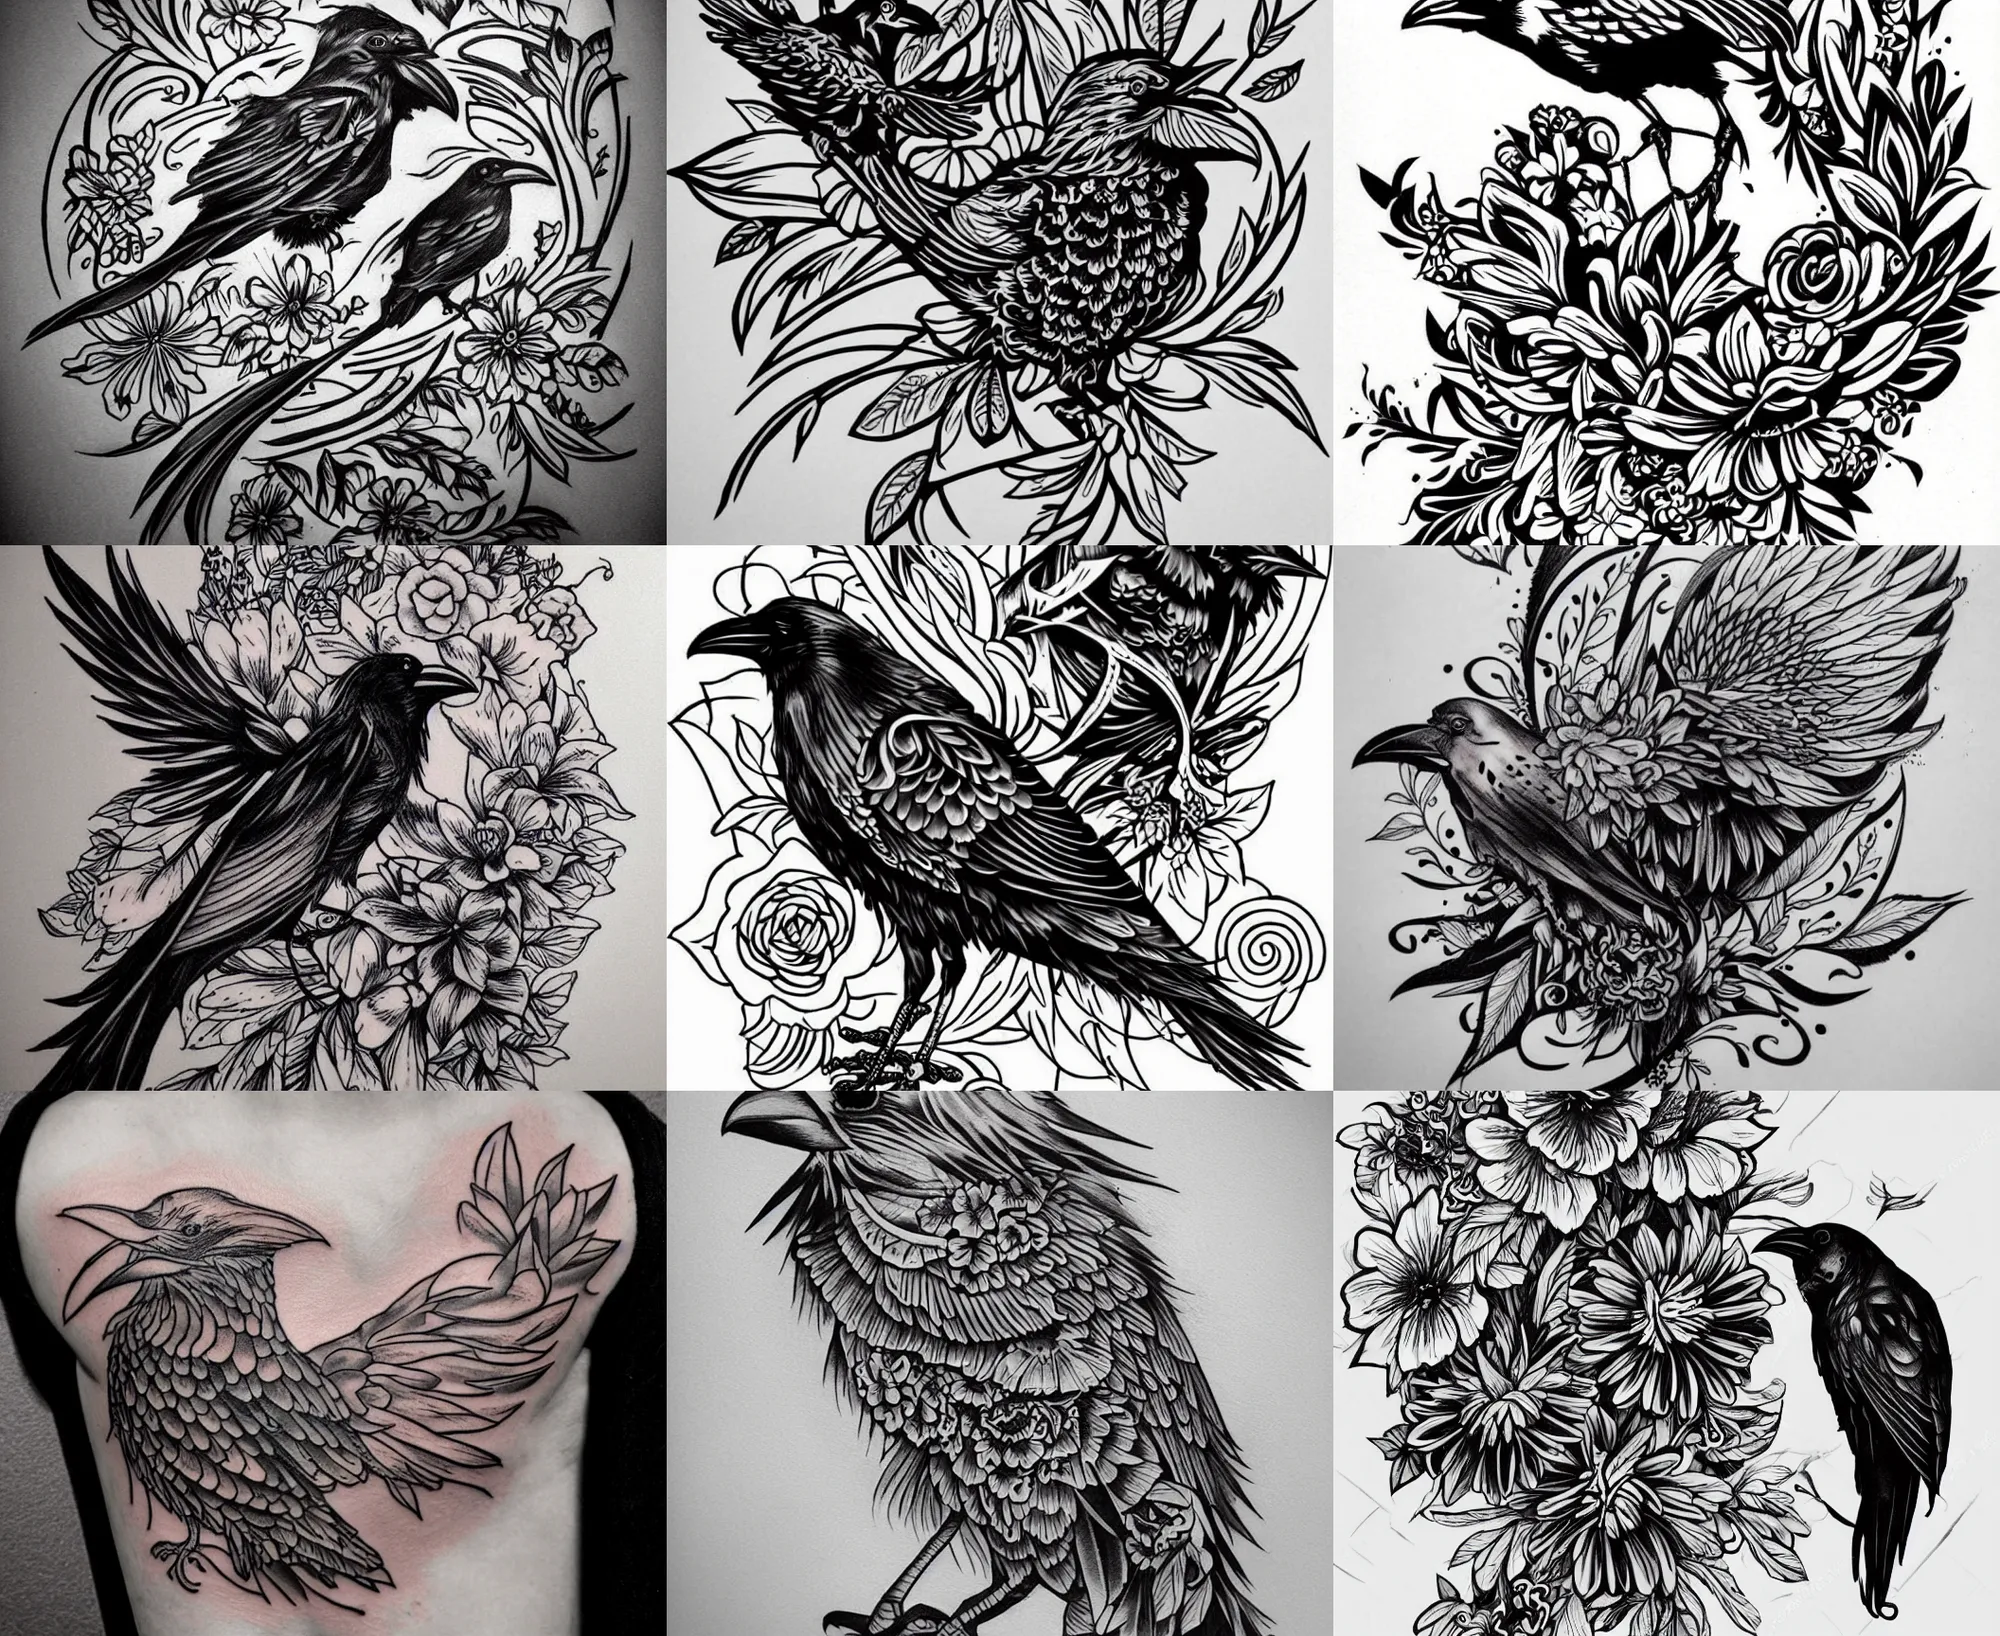 Crow tattoo by AntoniettaArnoneArts on DeviantArt